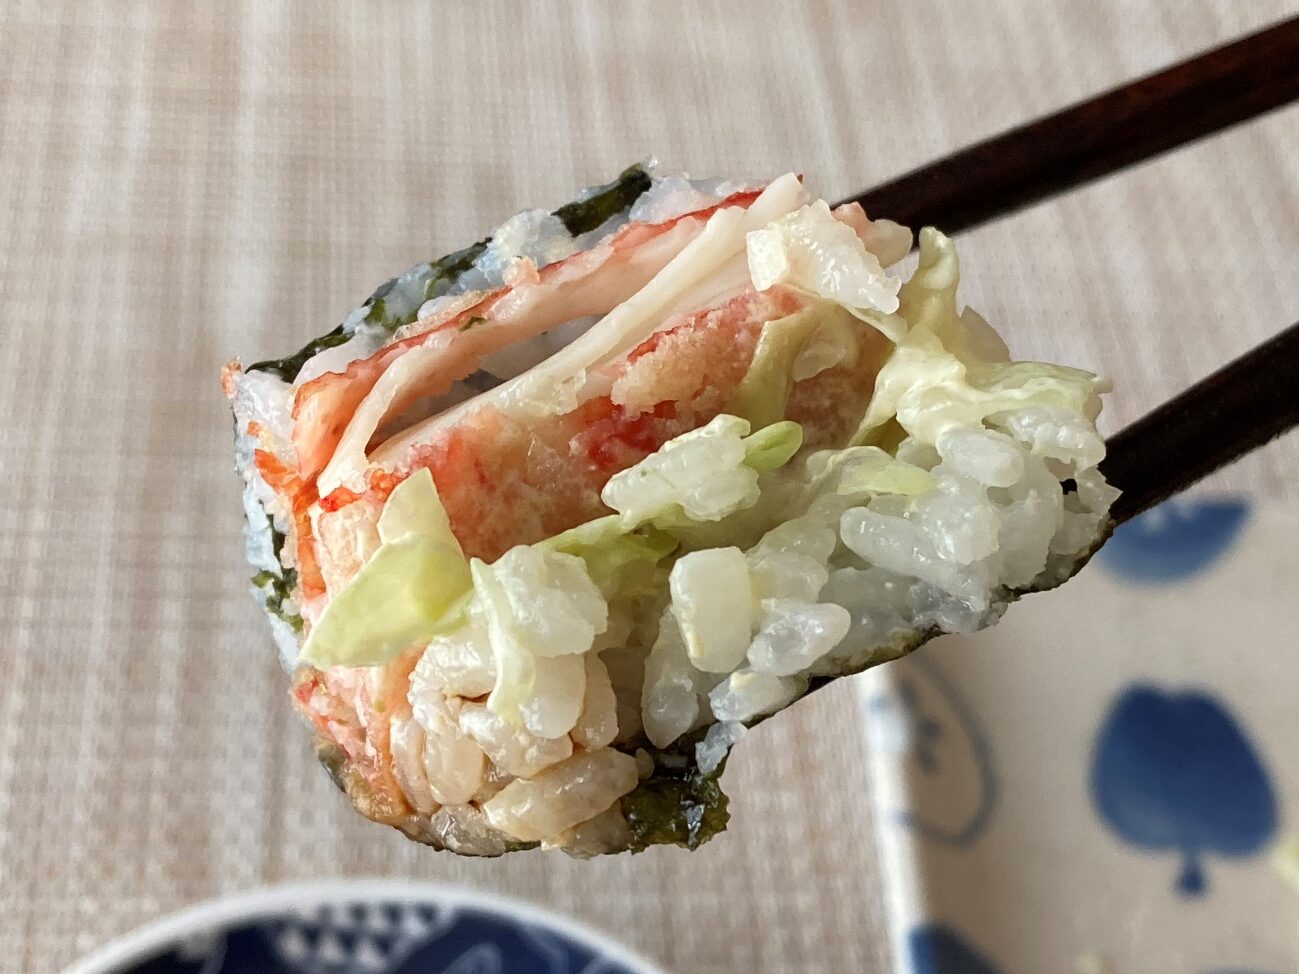 箸で持ち上げた業務スーパーのかにかま棒身天ぷらで作った巻き寿司のアップ